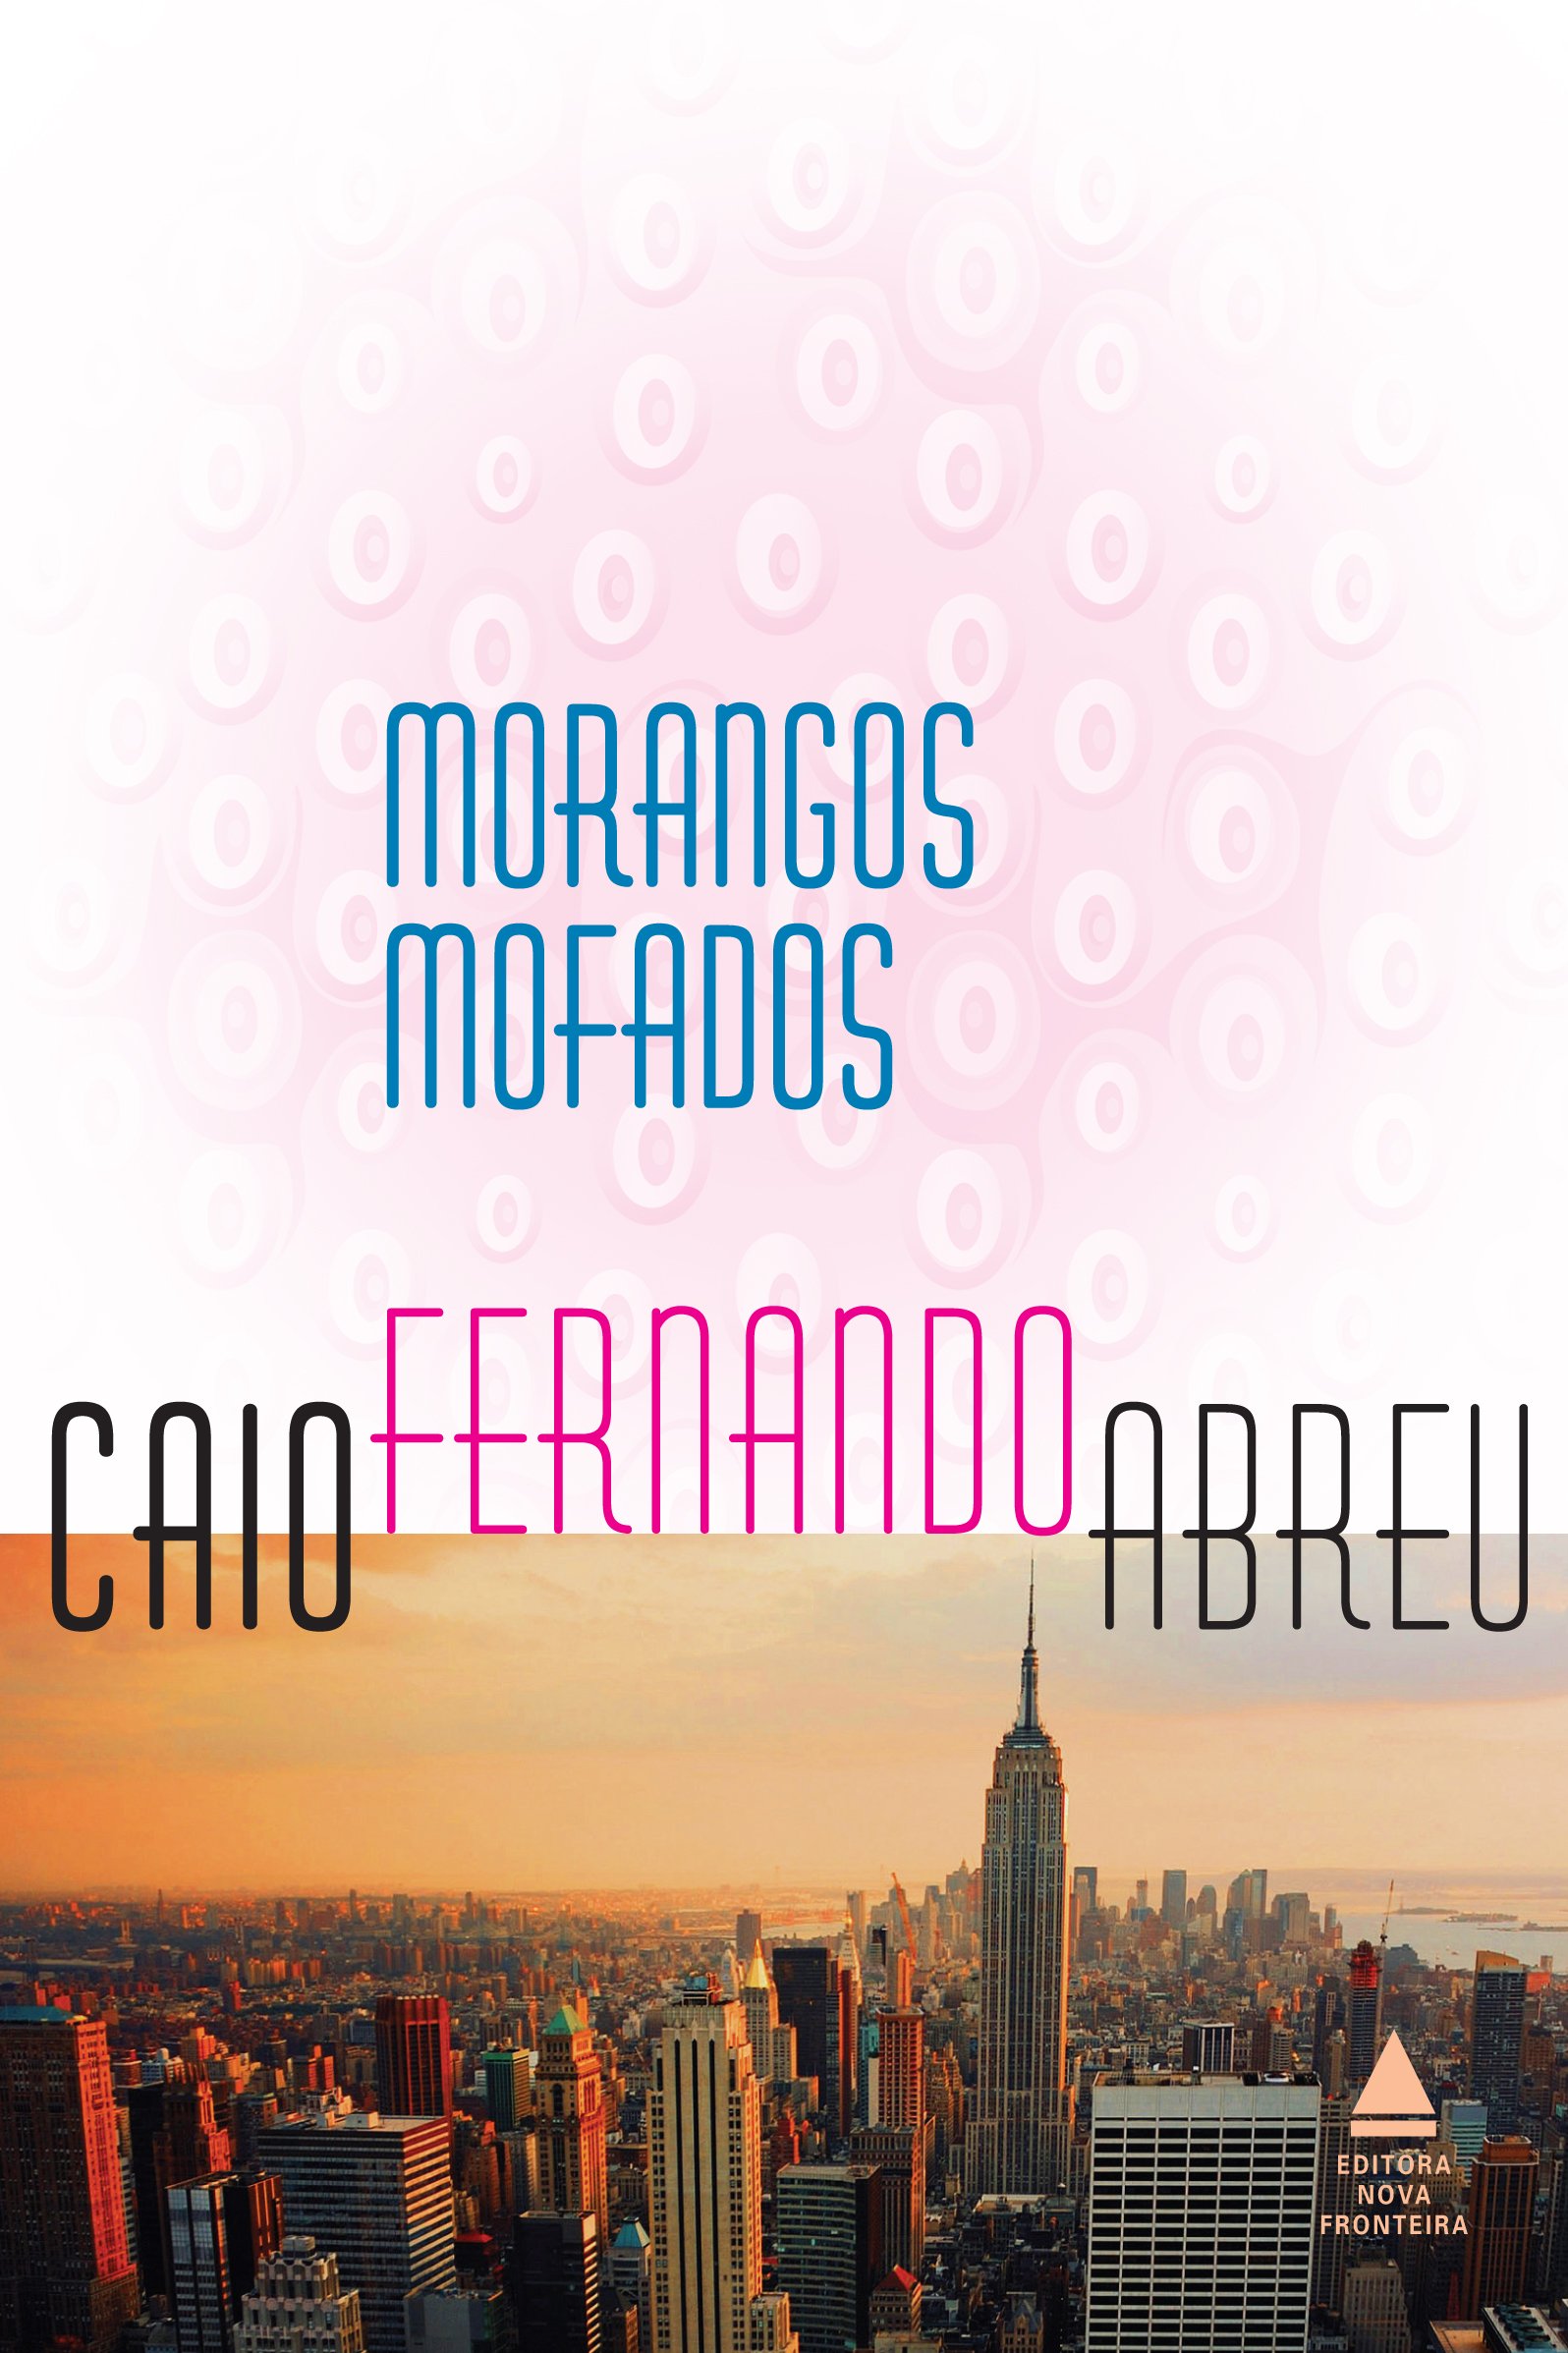 Caio Fernando Abreu: Morangos mofados (Paperback, Português language, 2015, Nova Fonteira)